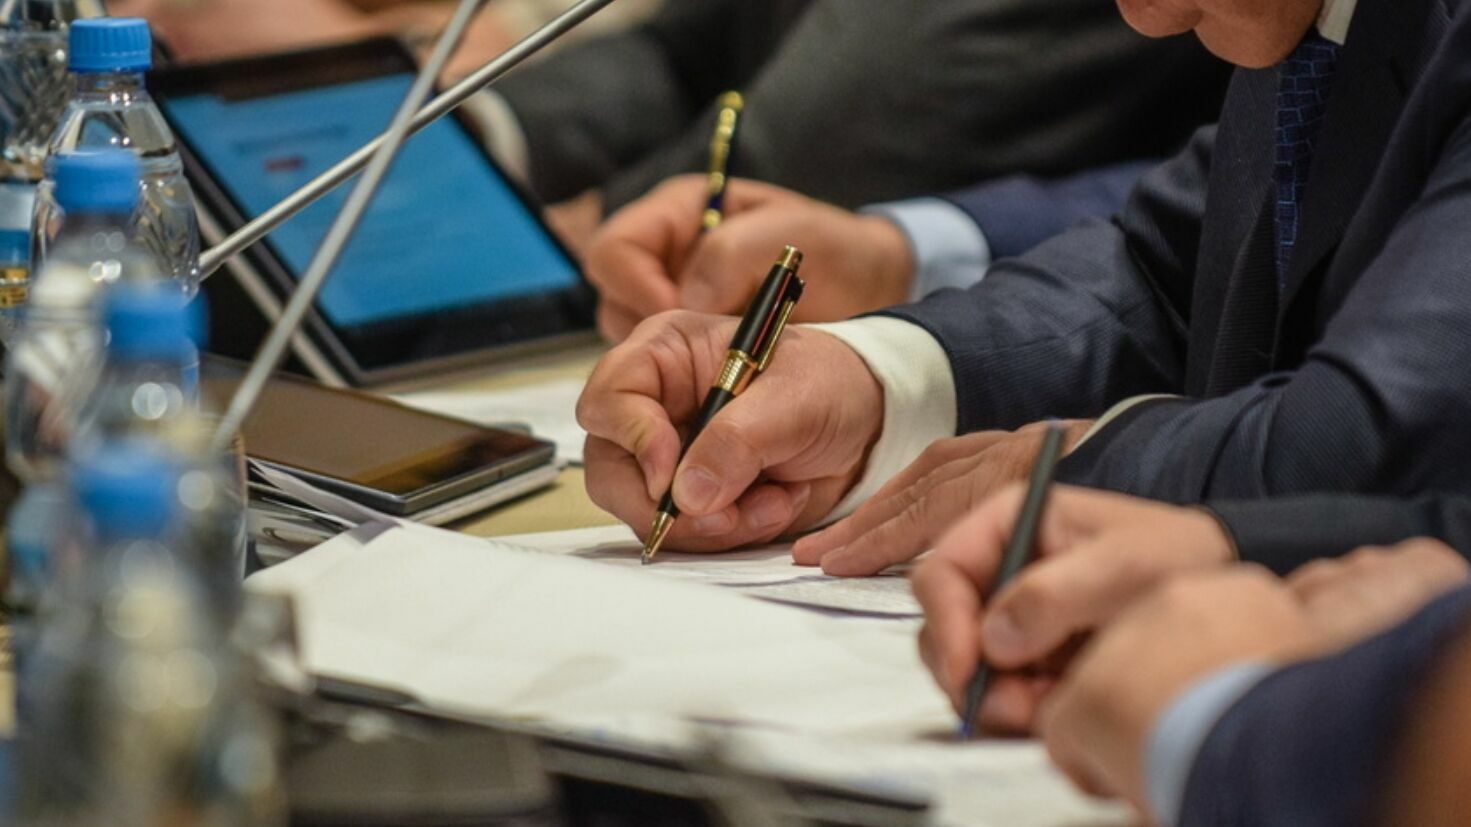 Власти Перми собираются потратить на 30 сувенирных наборов с ручками 300 тысяч рублей